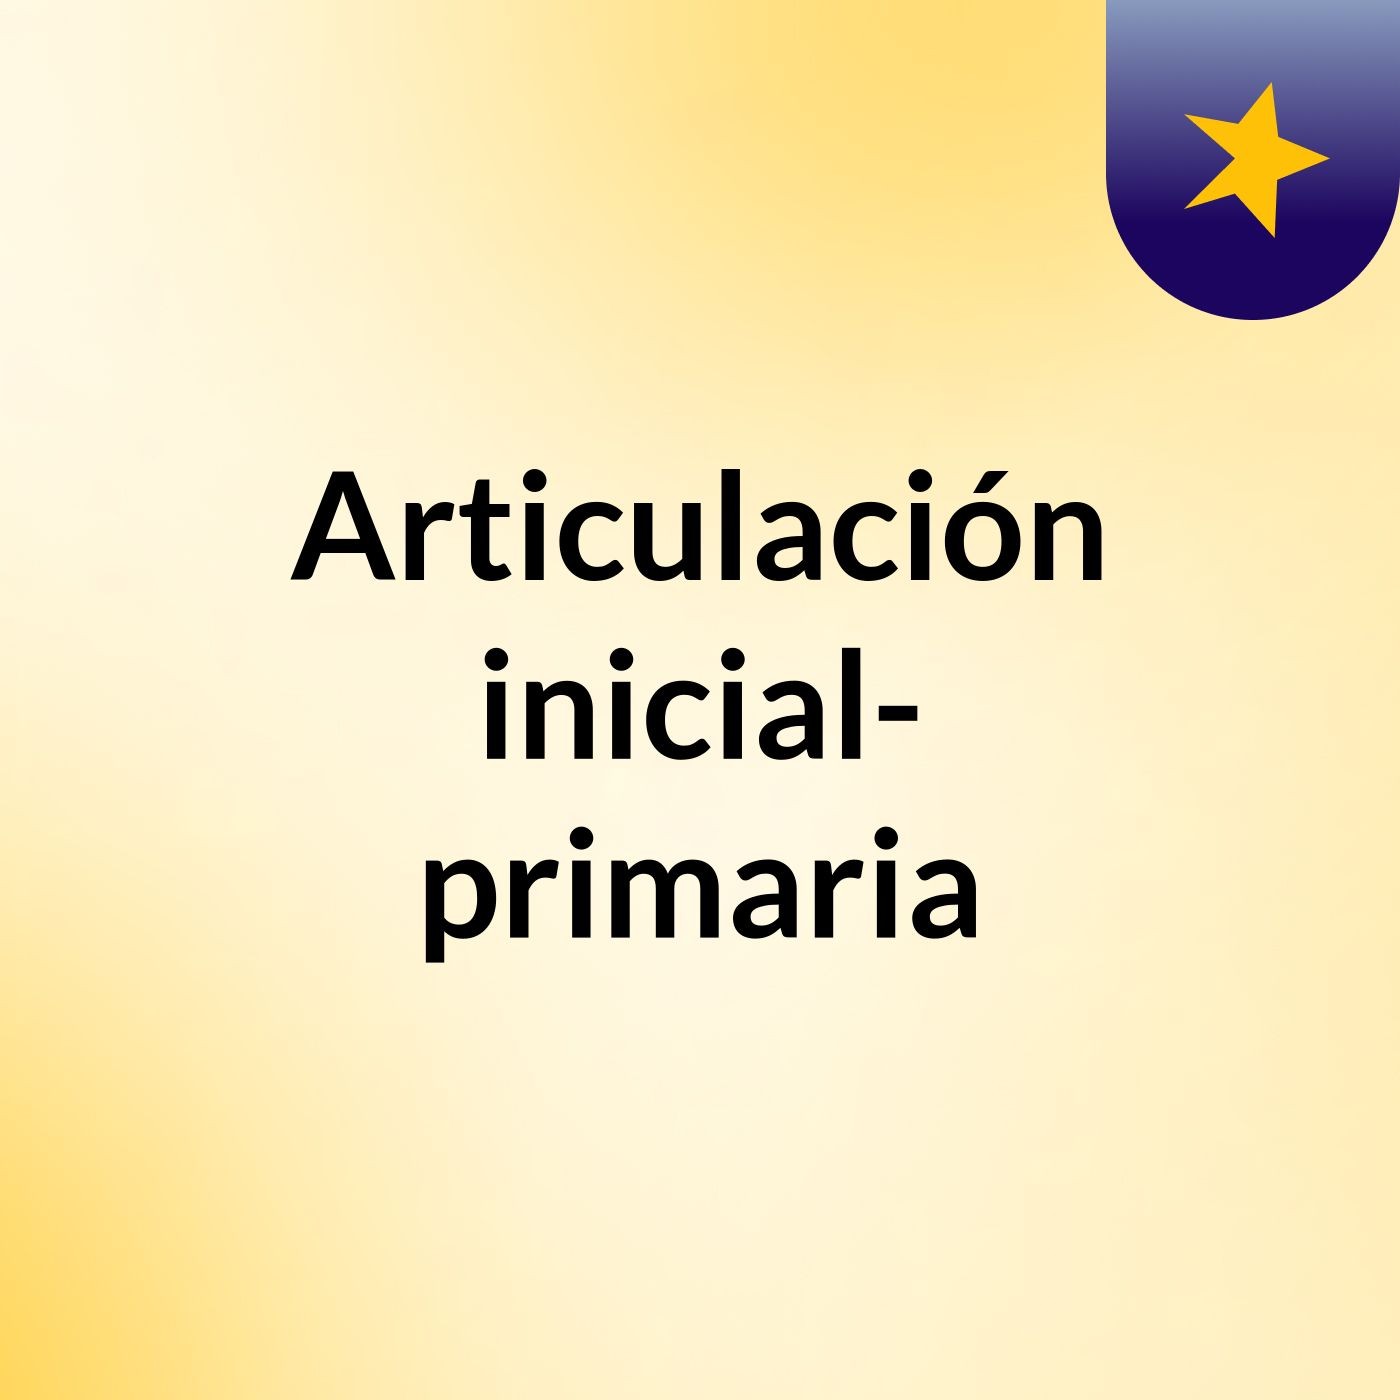 Articulación inicial- primaria